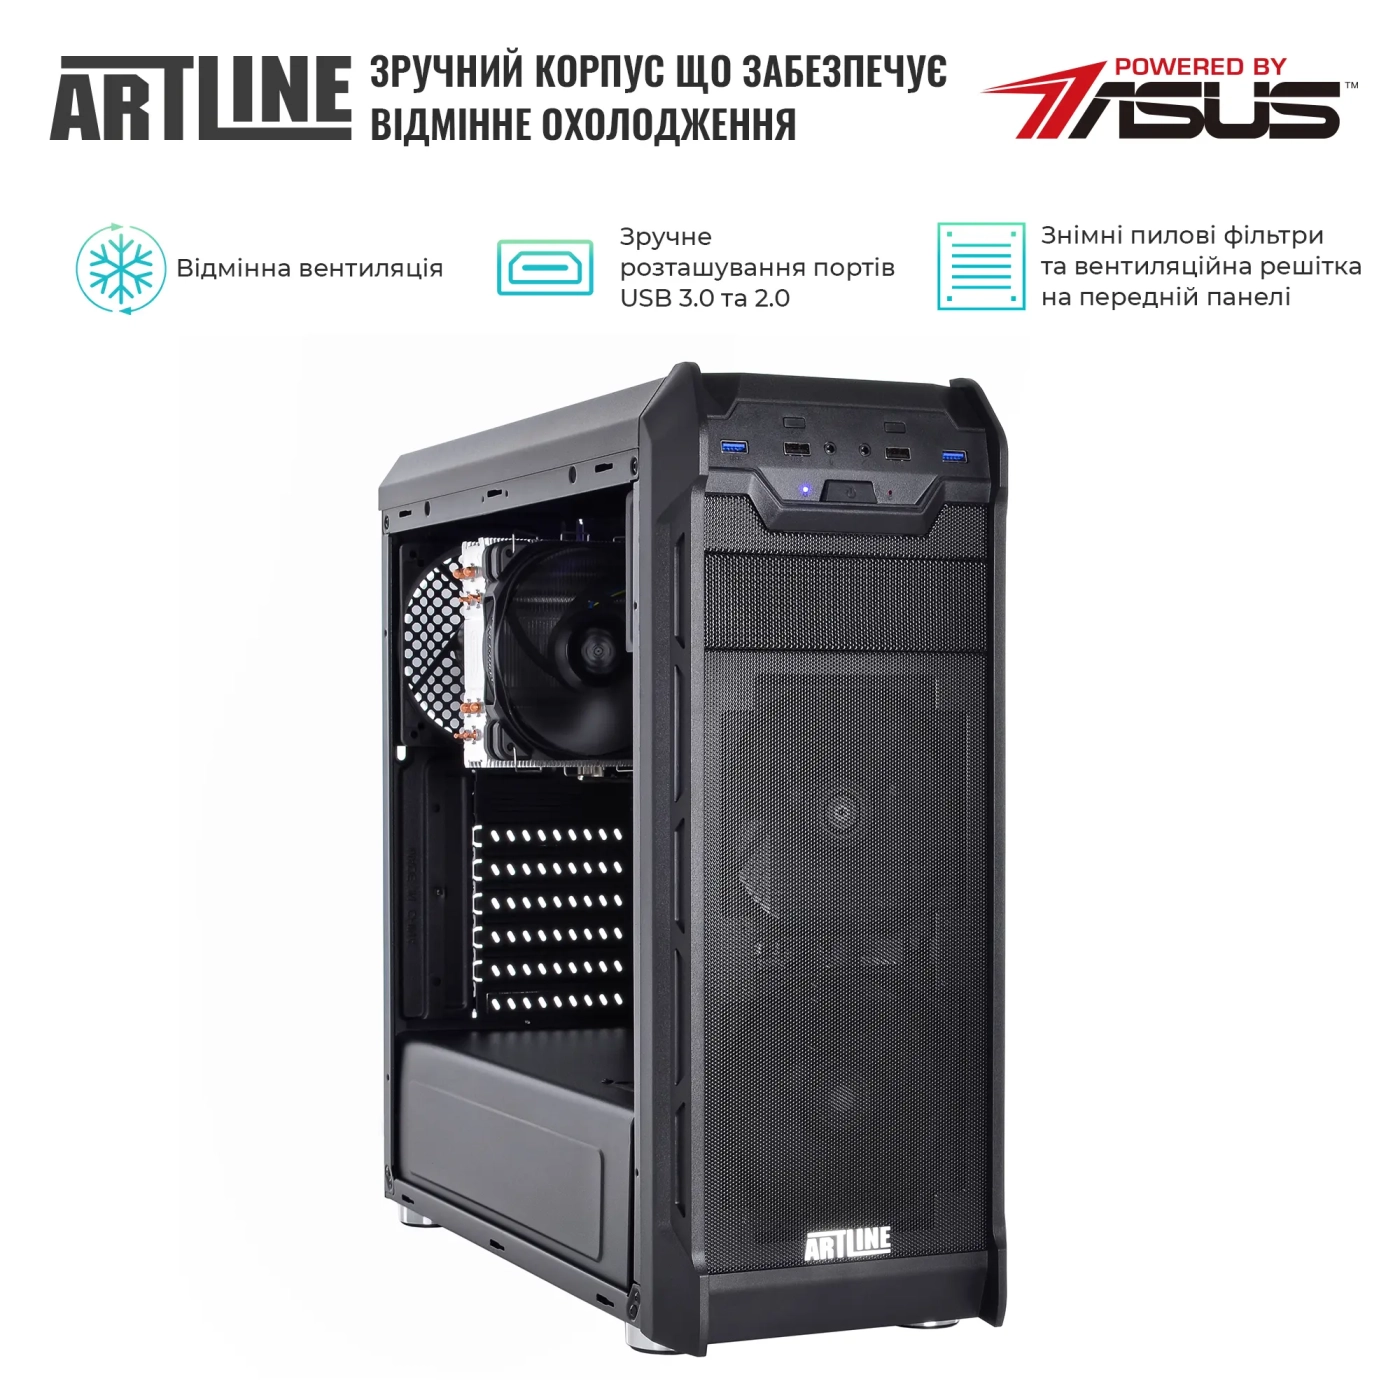 Купить Сервер ARTLINE Business T27 (T27v36) - фото 3